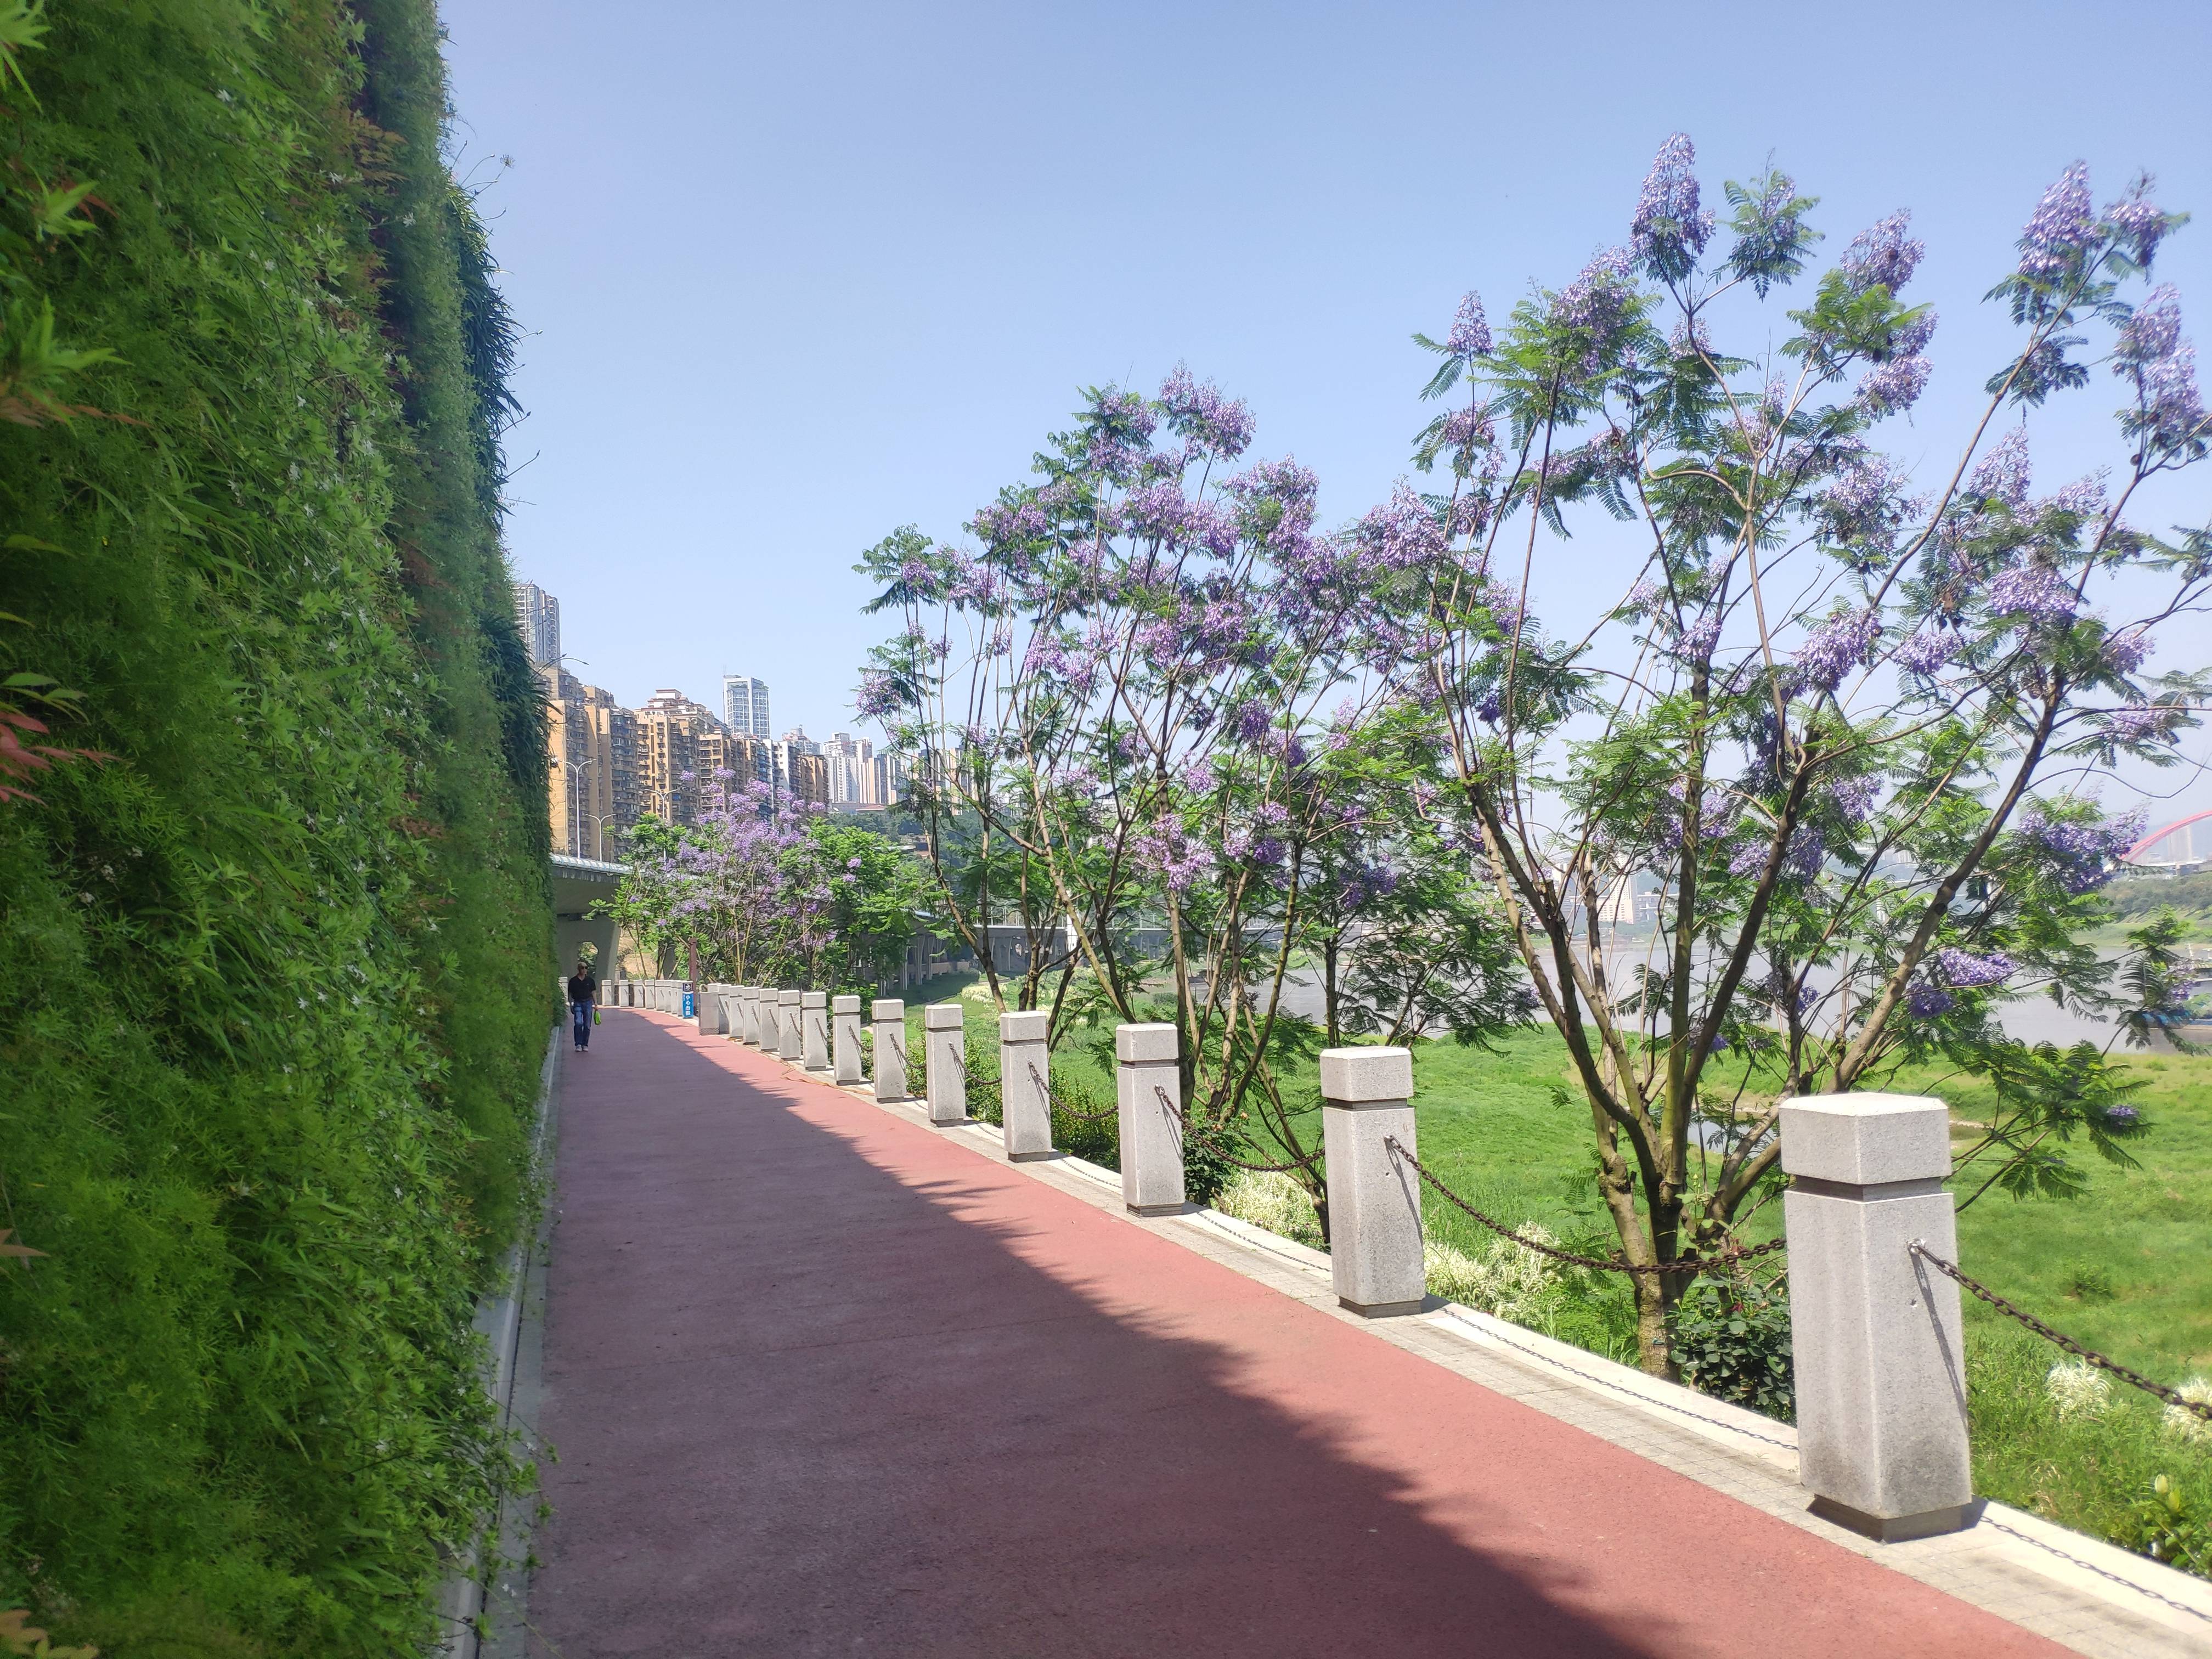 5月初夏的旅游风景!重庆:蓝花楹绽放长江岸边 紫色浪漫如梦似幻